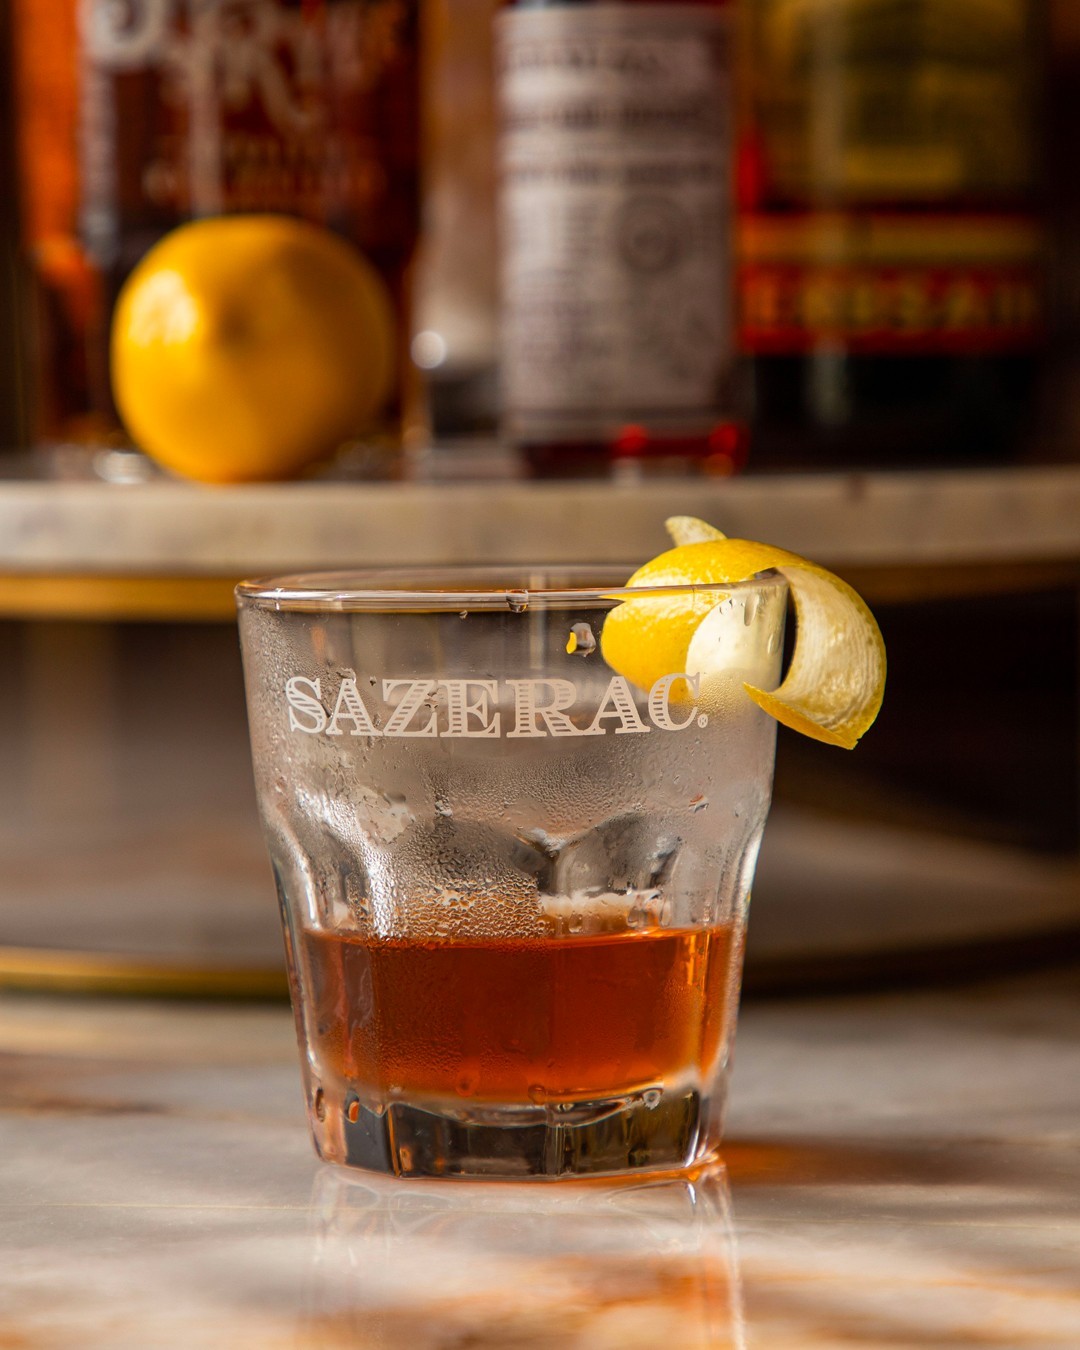 The Sazerac Cocktail